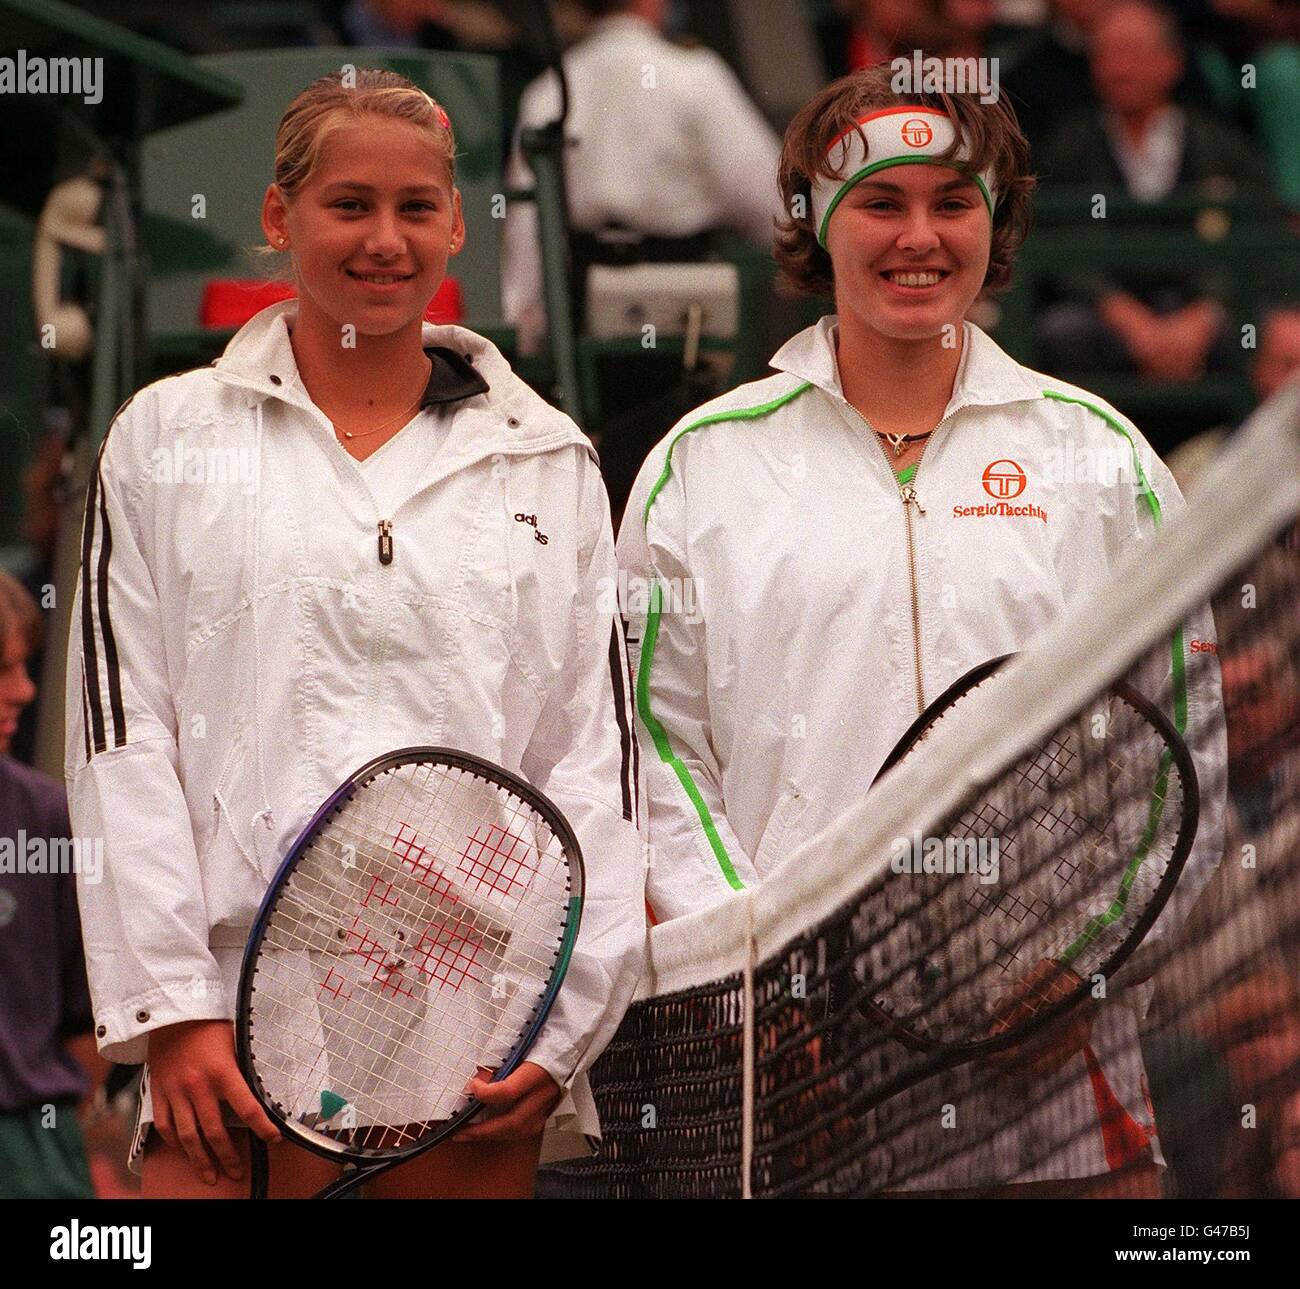 Anna Kournikova et Martina Hingis posent pour les photographes avant le début de leur demi-finale au Centre court de Wimbledon cet après-midi (jeudi). Mlle Hignis a gagné la bataille des seize ans, prenant sa place dans la finale en remportant 6-3 6-2. Photo de Fiona Hanson/PA. Banque D'Images